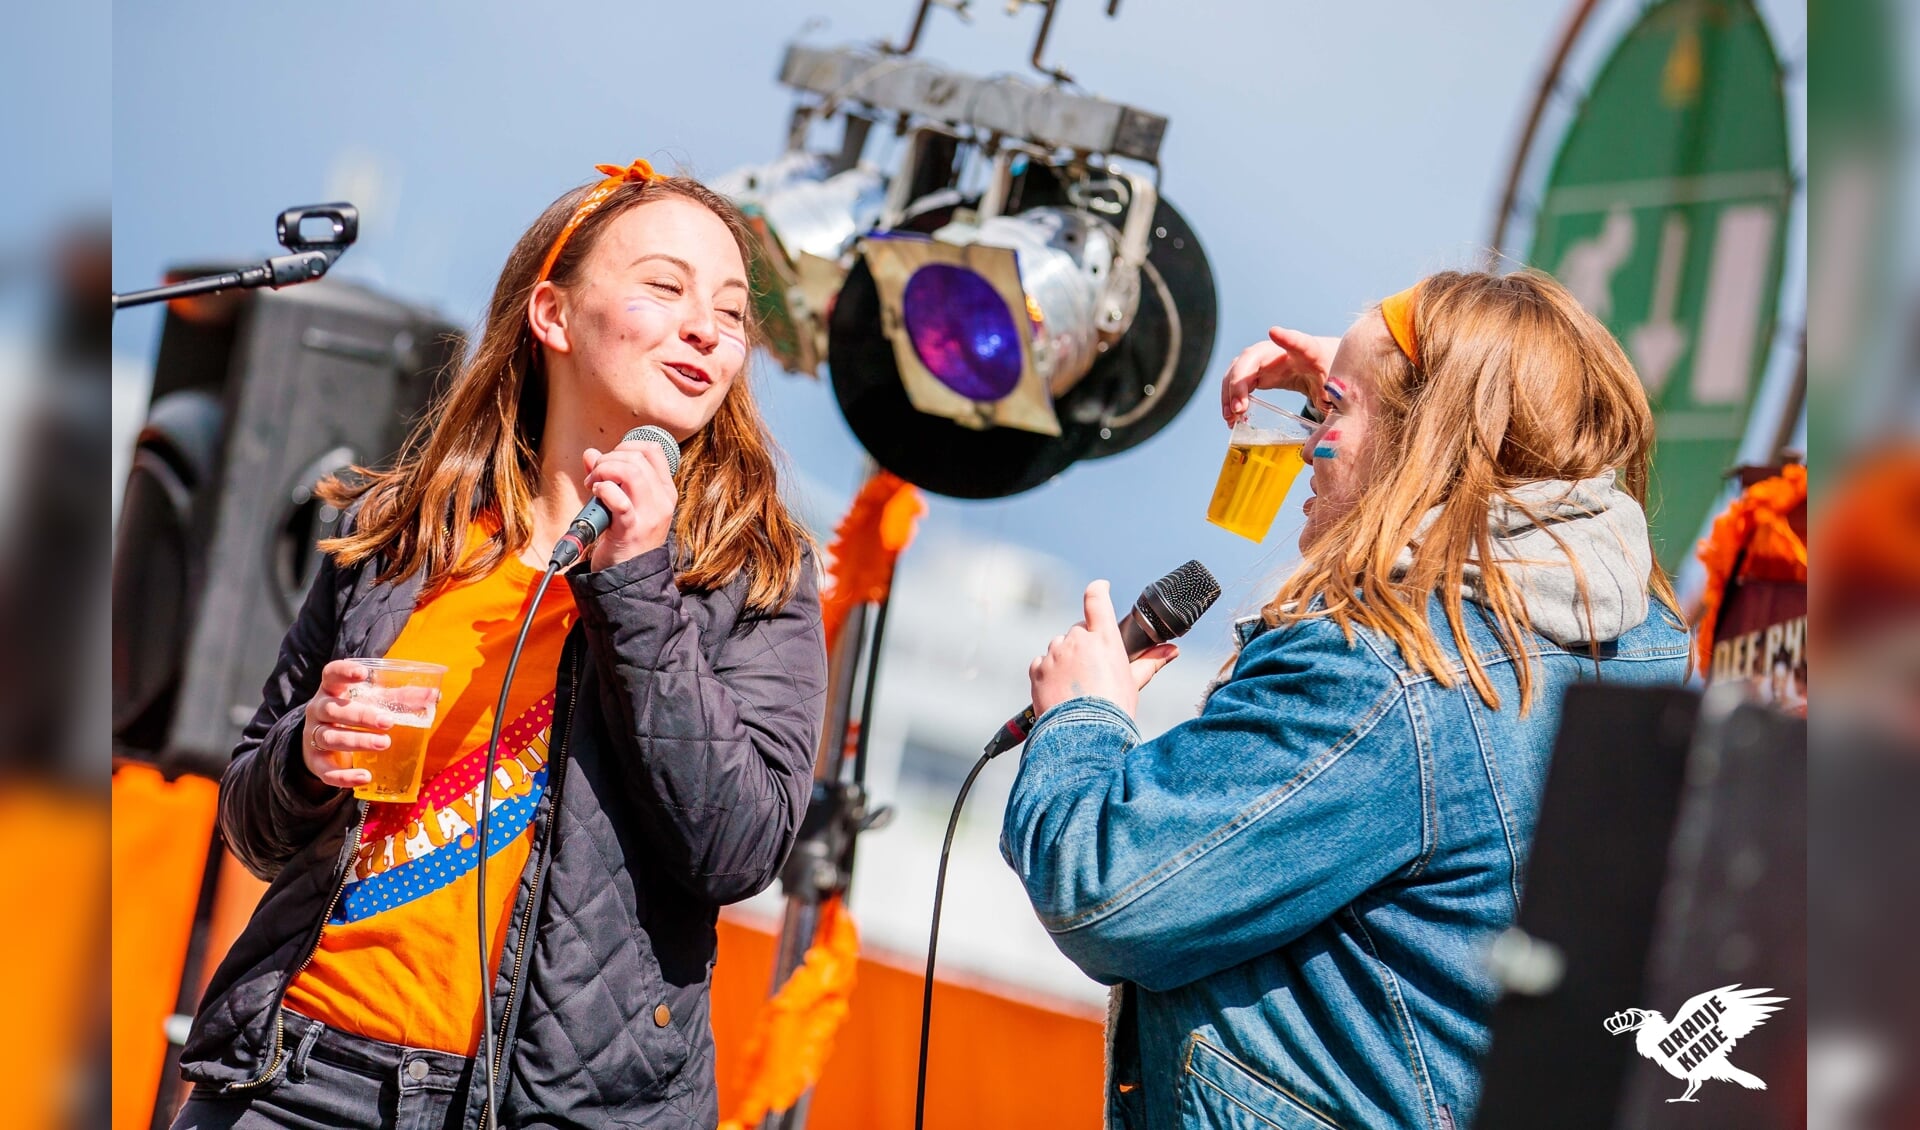 Het evenement 'Oranjekade' aan de Tramkade in Den Bosch wordt dit jaar voor de vierde keer georganiseerd.